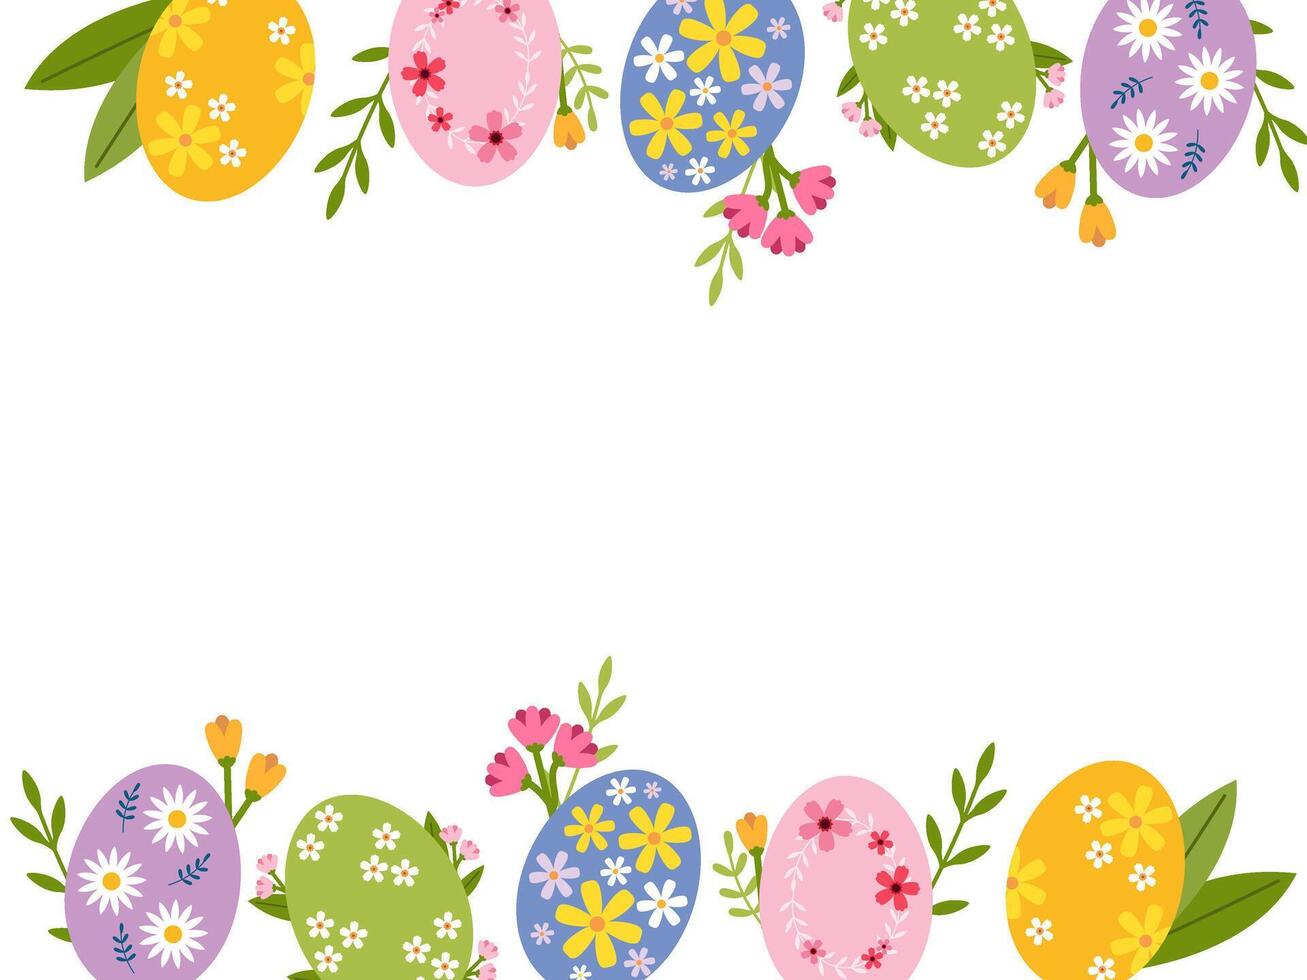 Pascua de Resurrección antecedentes con Copiar espacio para texto. resumen marco hecho de Pascua de Resurrección huevos y flores vector ilustración